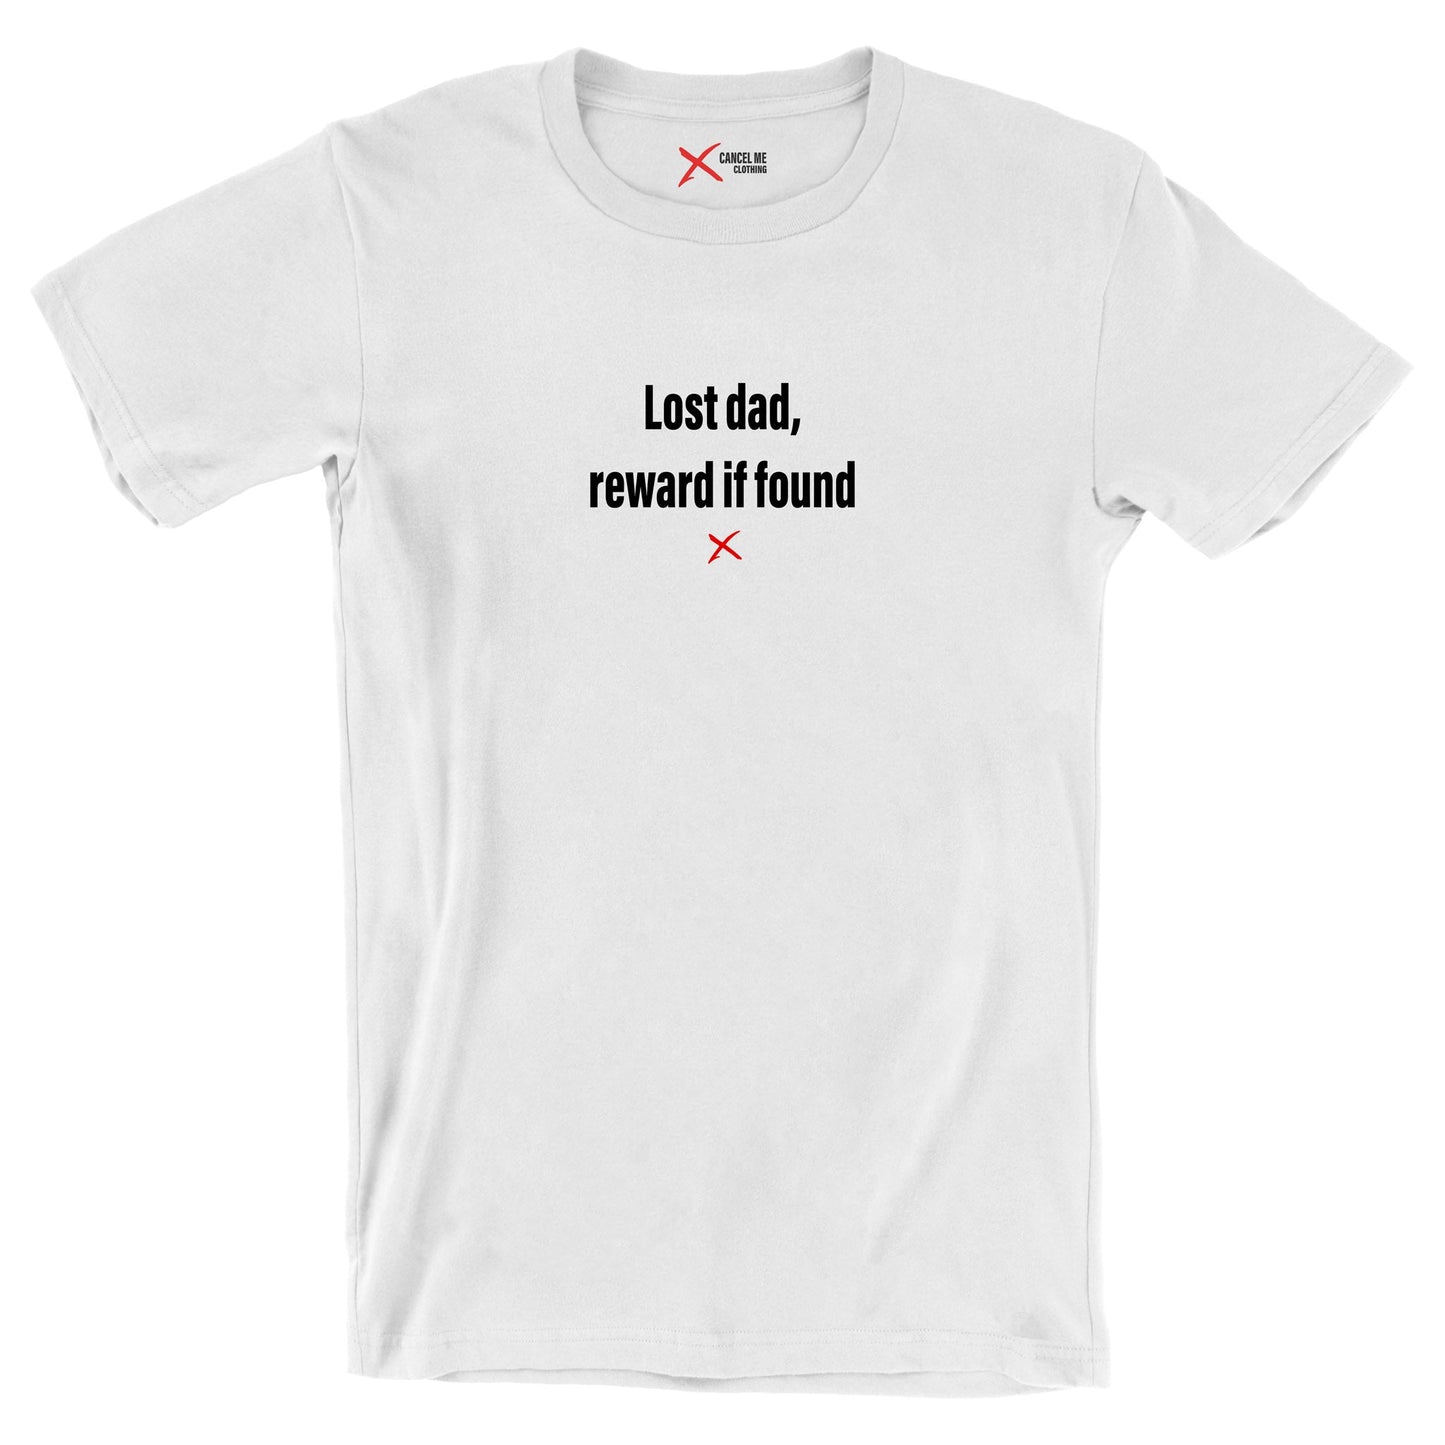 Lost dad, reward if found - Shirt